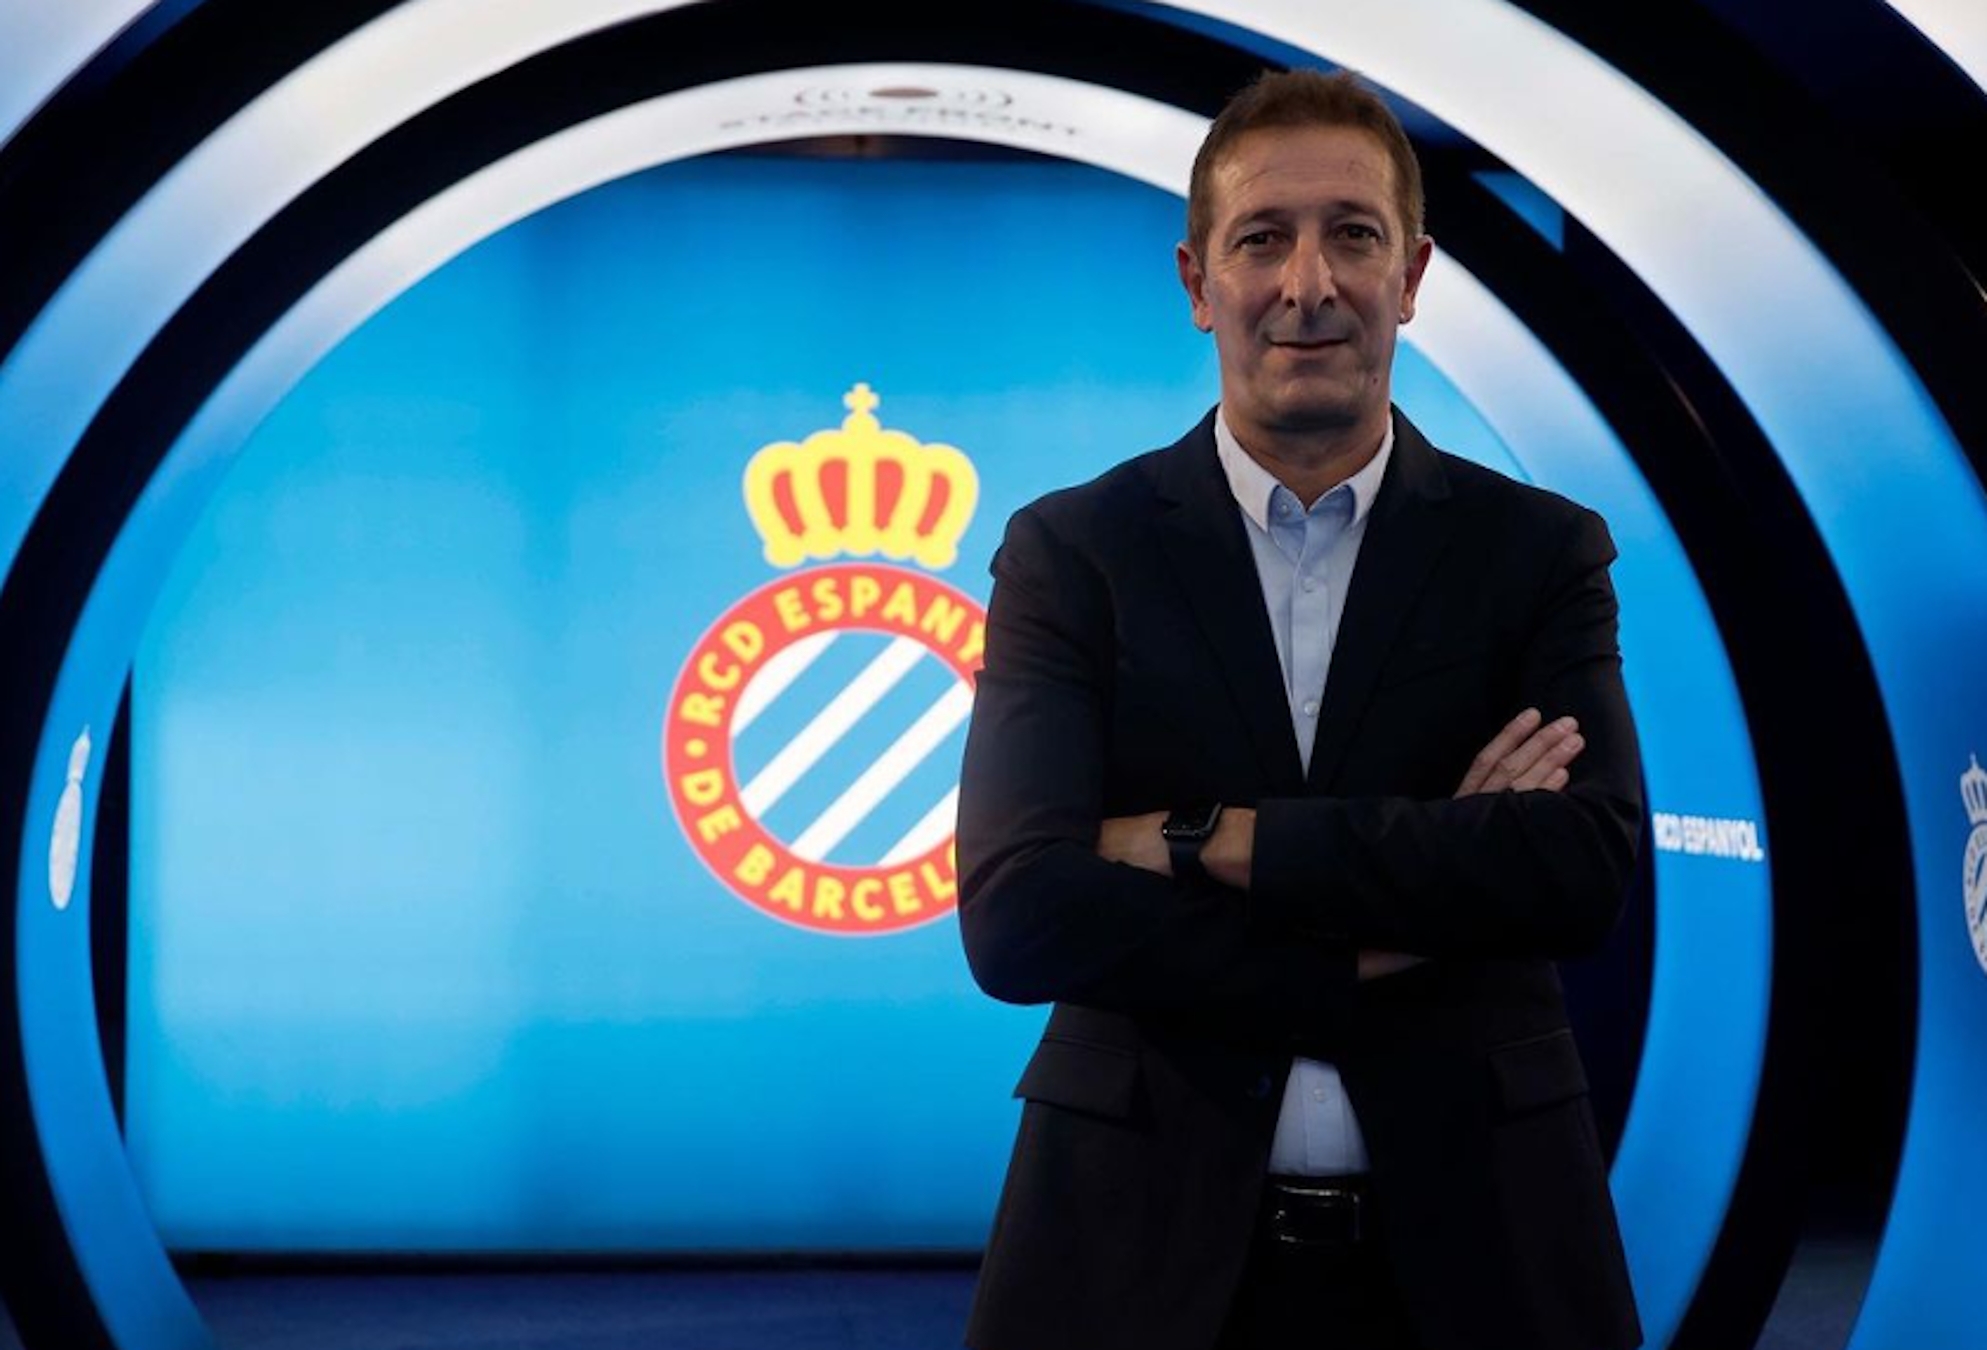 Ramis, nou entrenador tarragoní de l'Espanyol, excuses barates amb el català